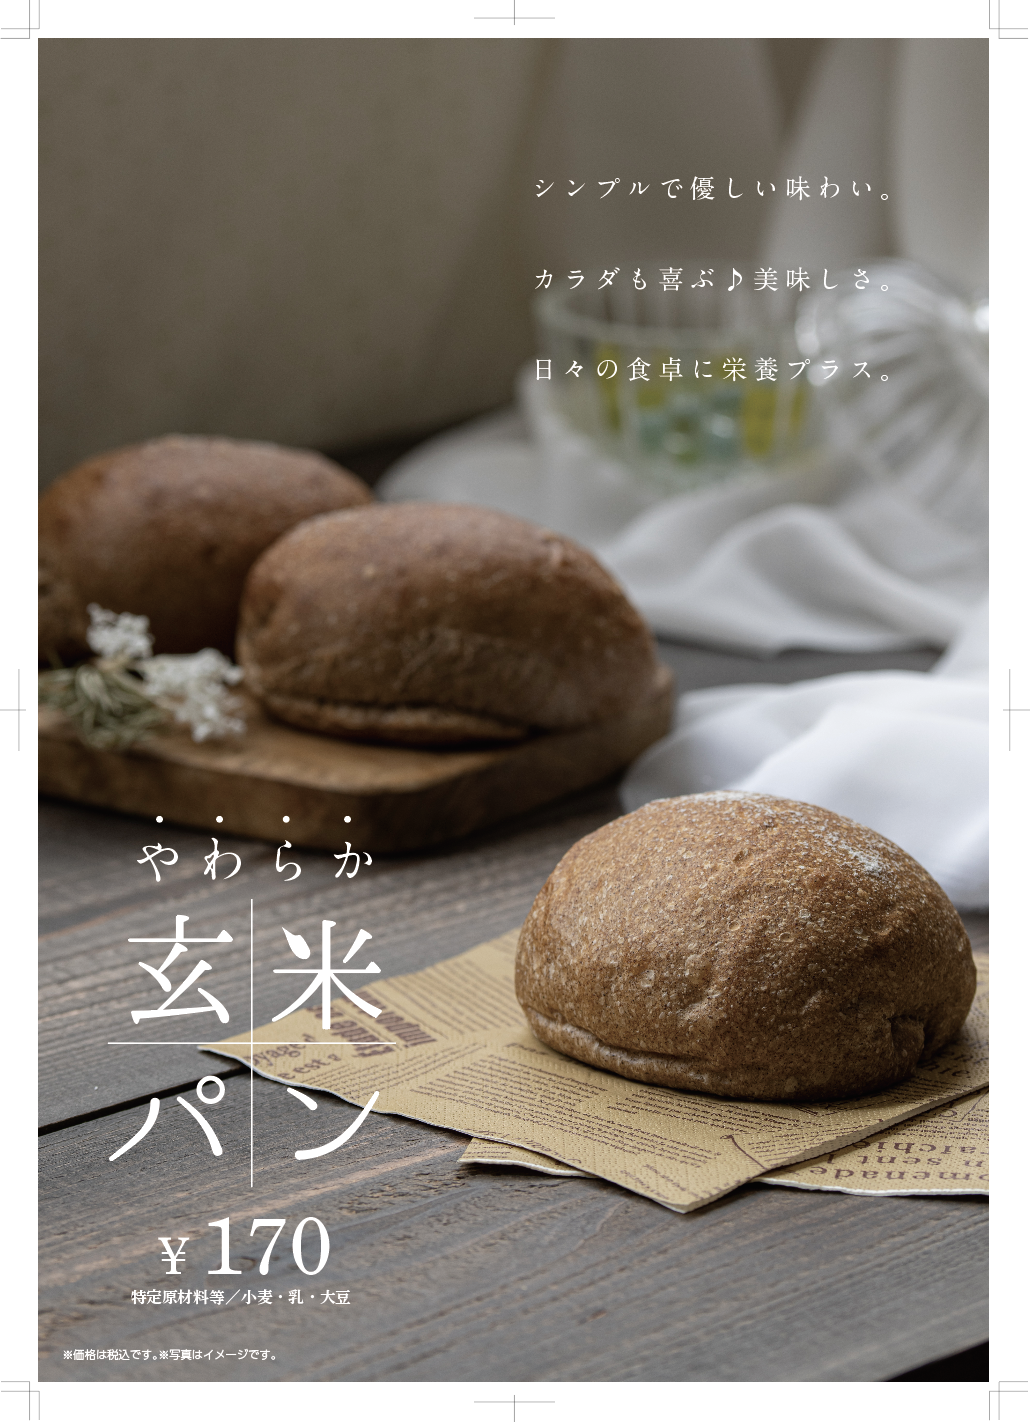 大阪のエーワンベーカリー、やわらか玄米パンを3/14に発売！
玄米の香ばしさと柔らかなもちもち食感で日々の食卓に栄養プラス